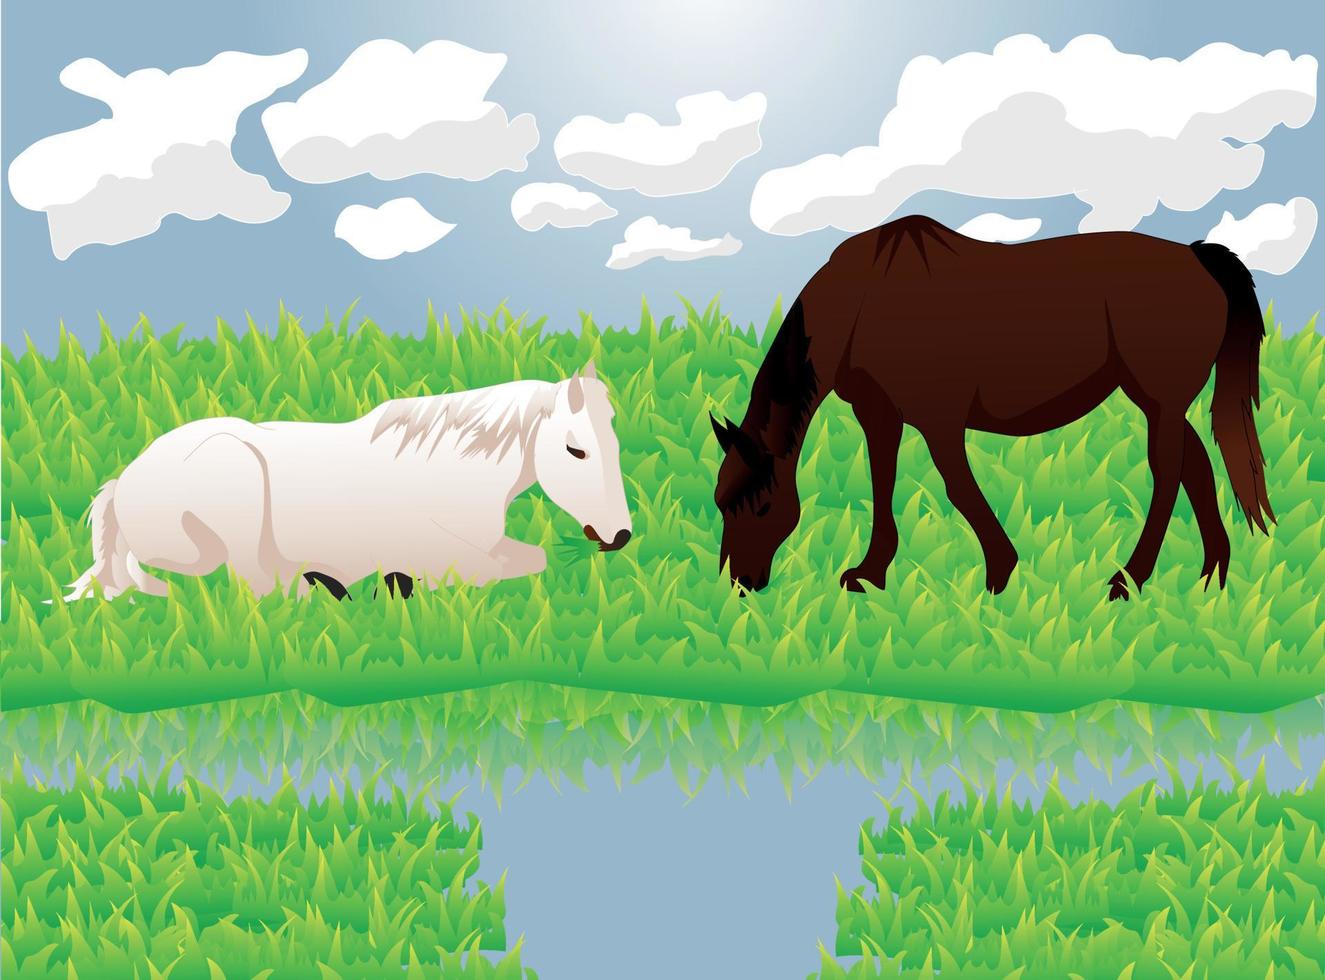 Pferde auf Weiden, die Gras fressen, Vektorillustration vektor